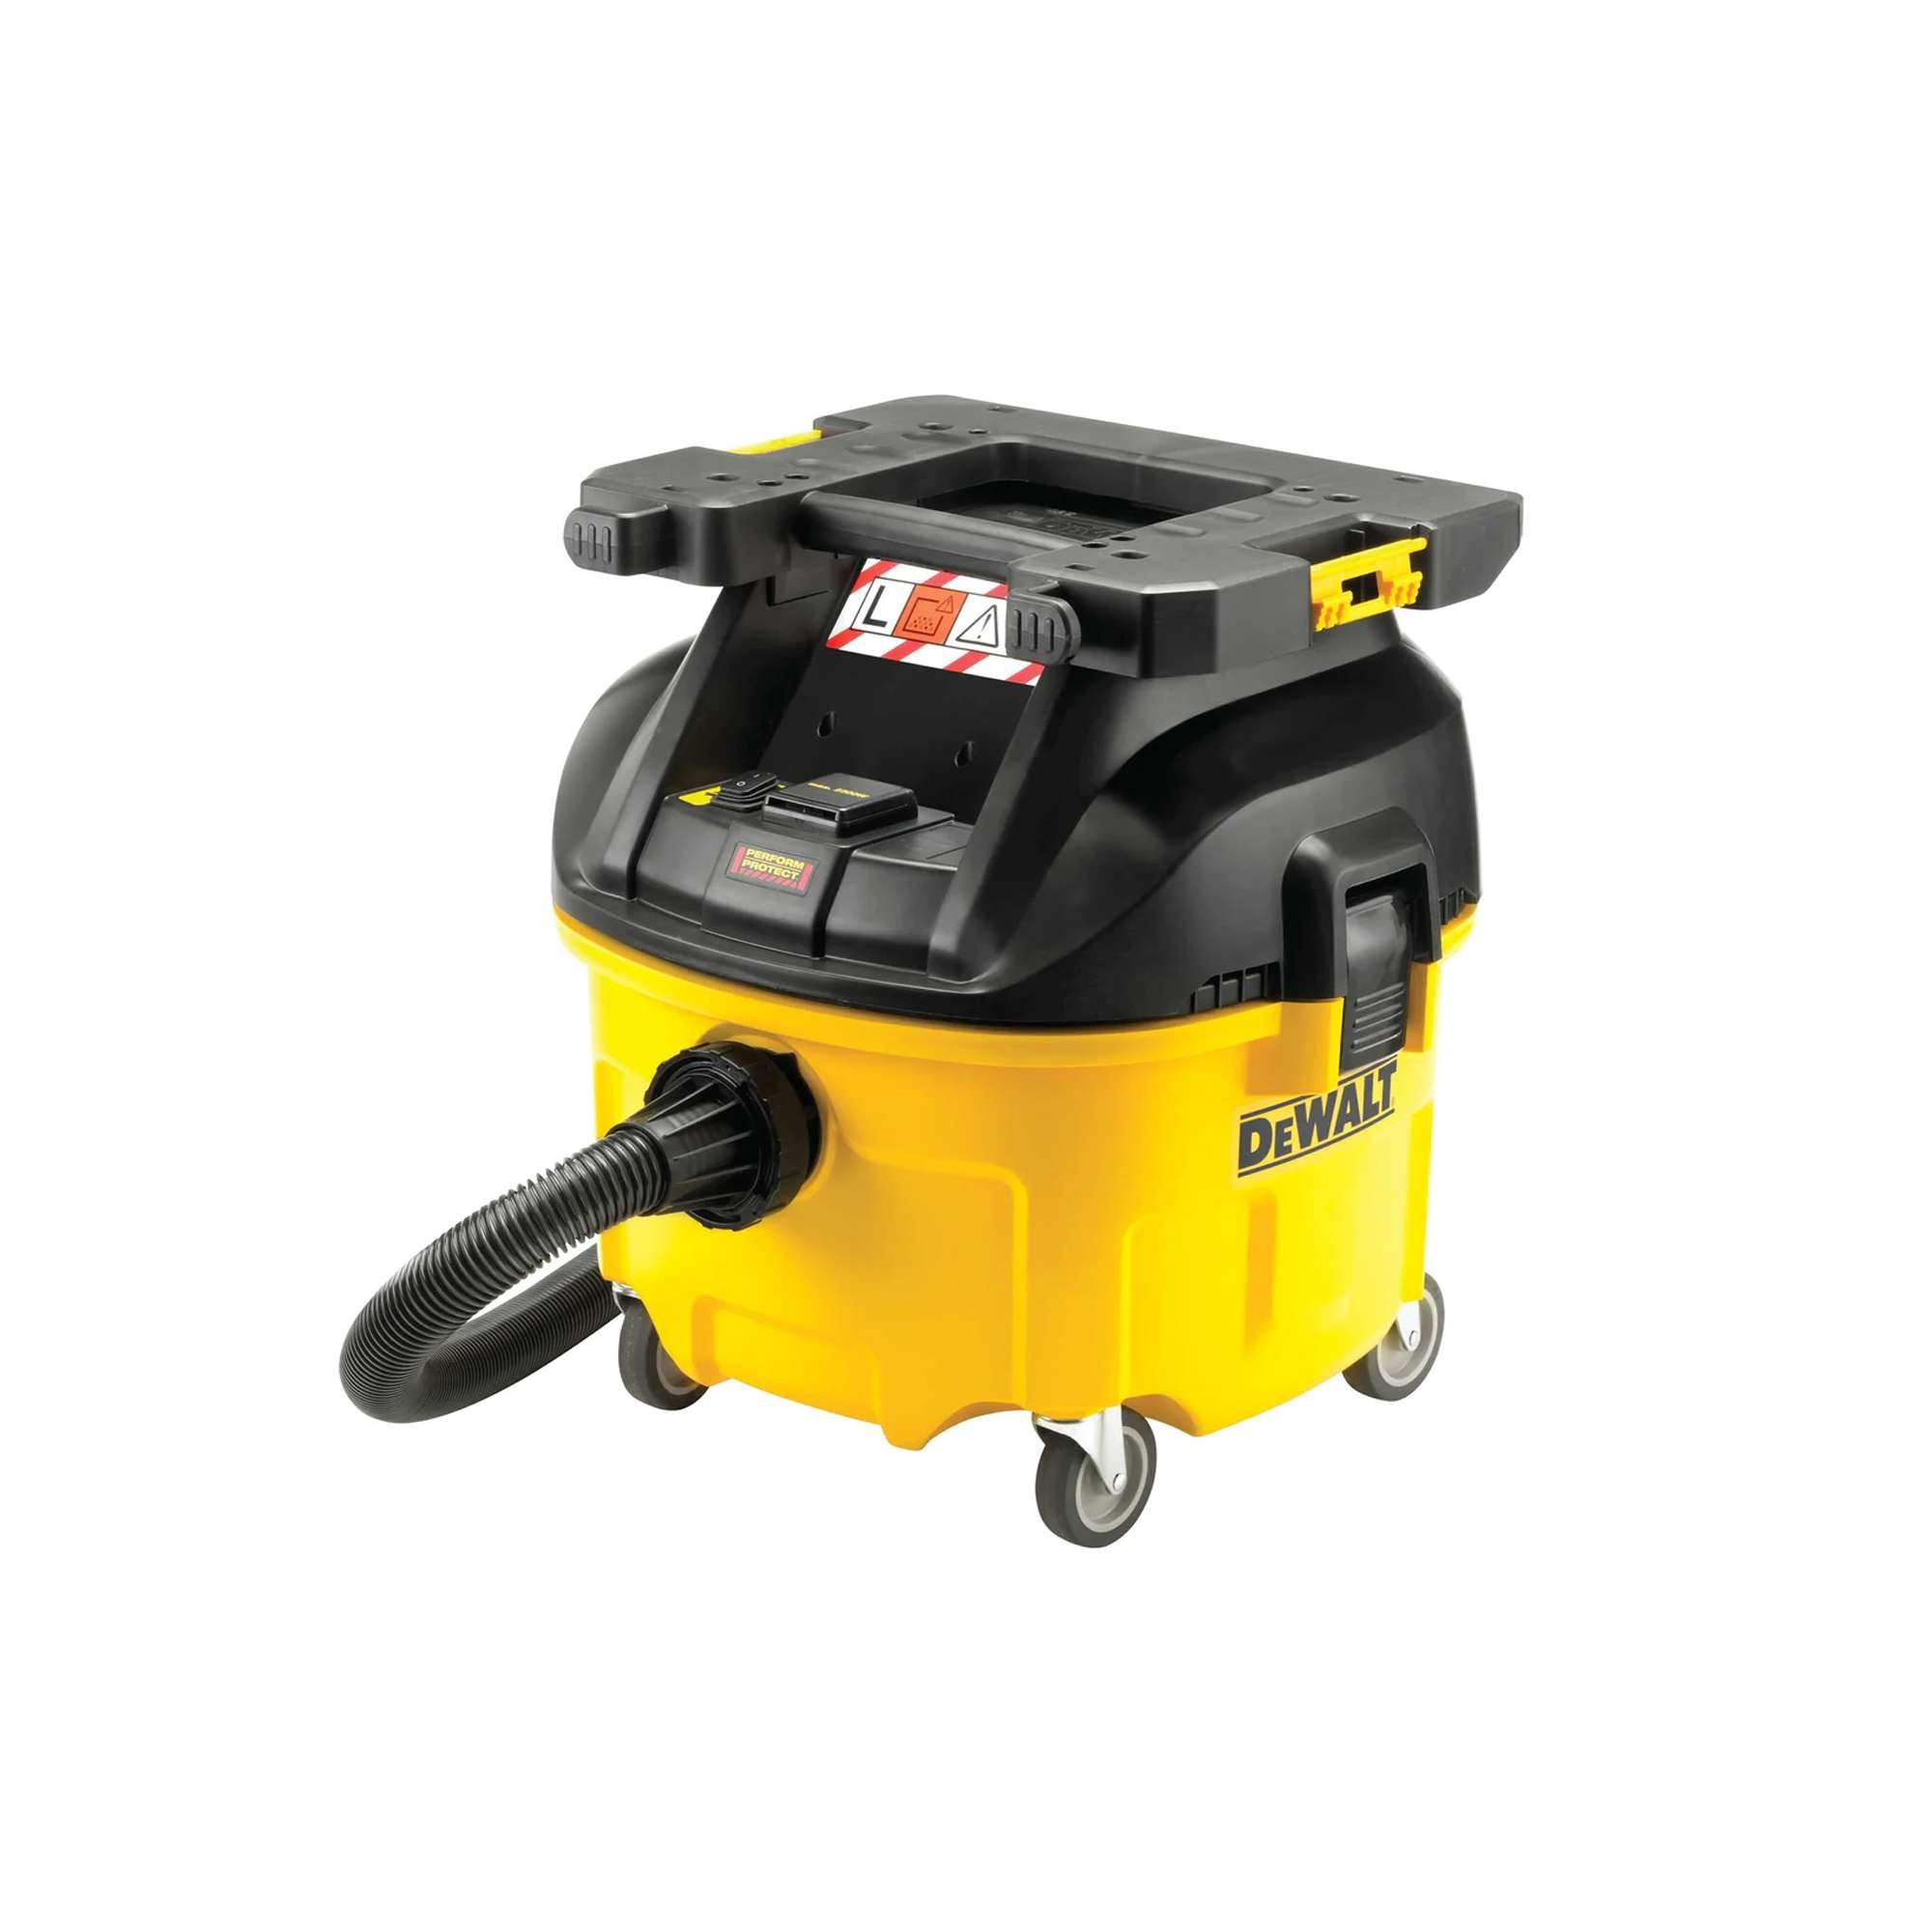 DEWALT DWV901lt-QS vacuum cleaner